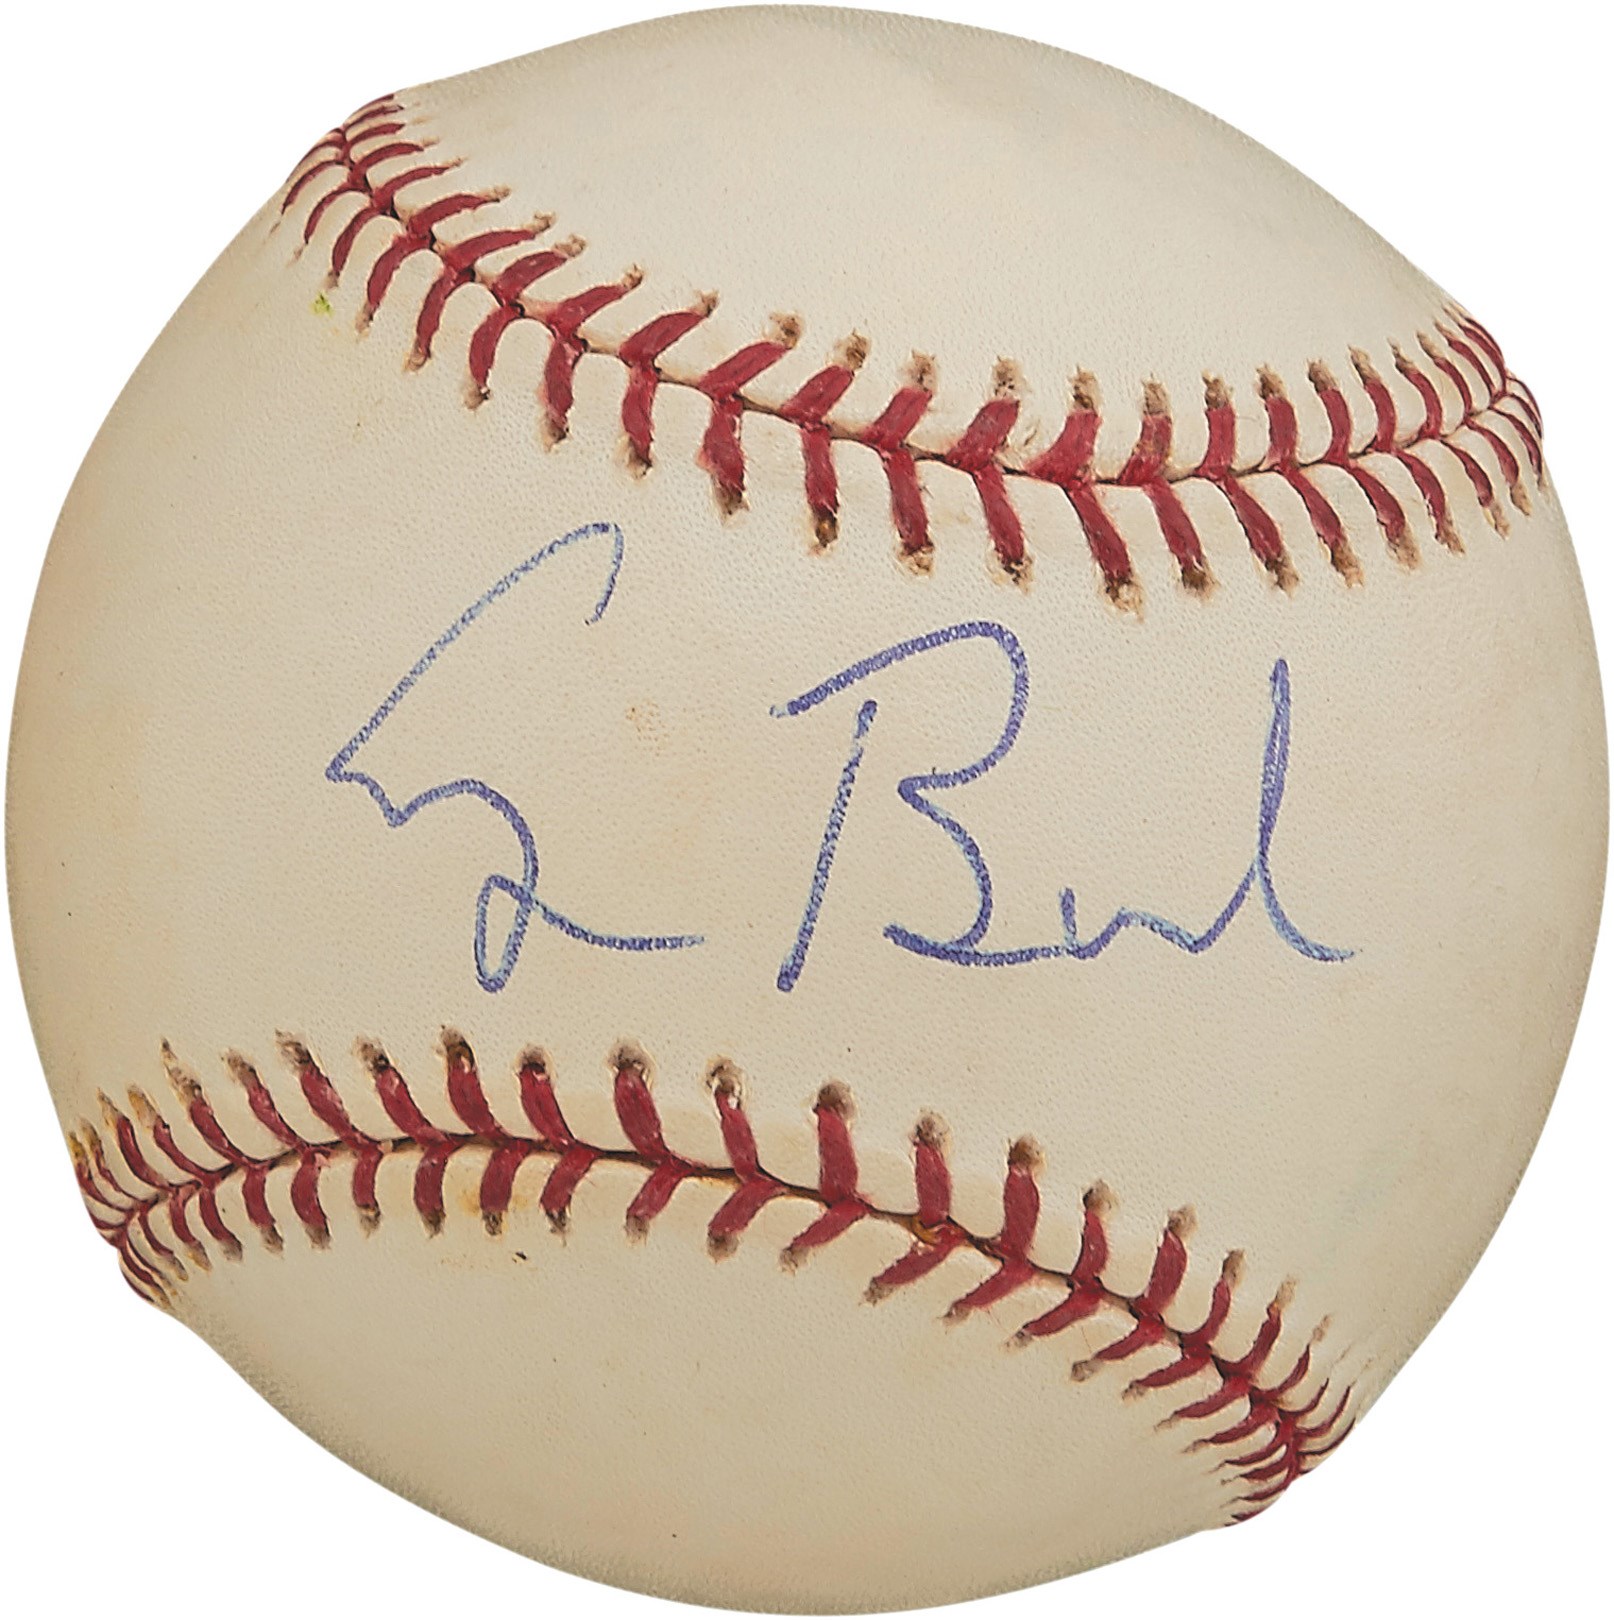 - George H.W. Bush Signed Baseball to Bobby Doerr (Photo Proof)